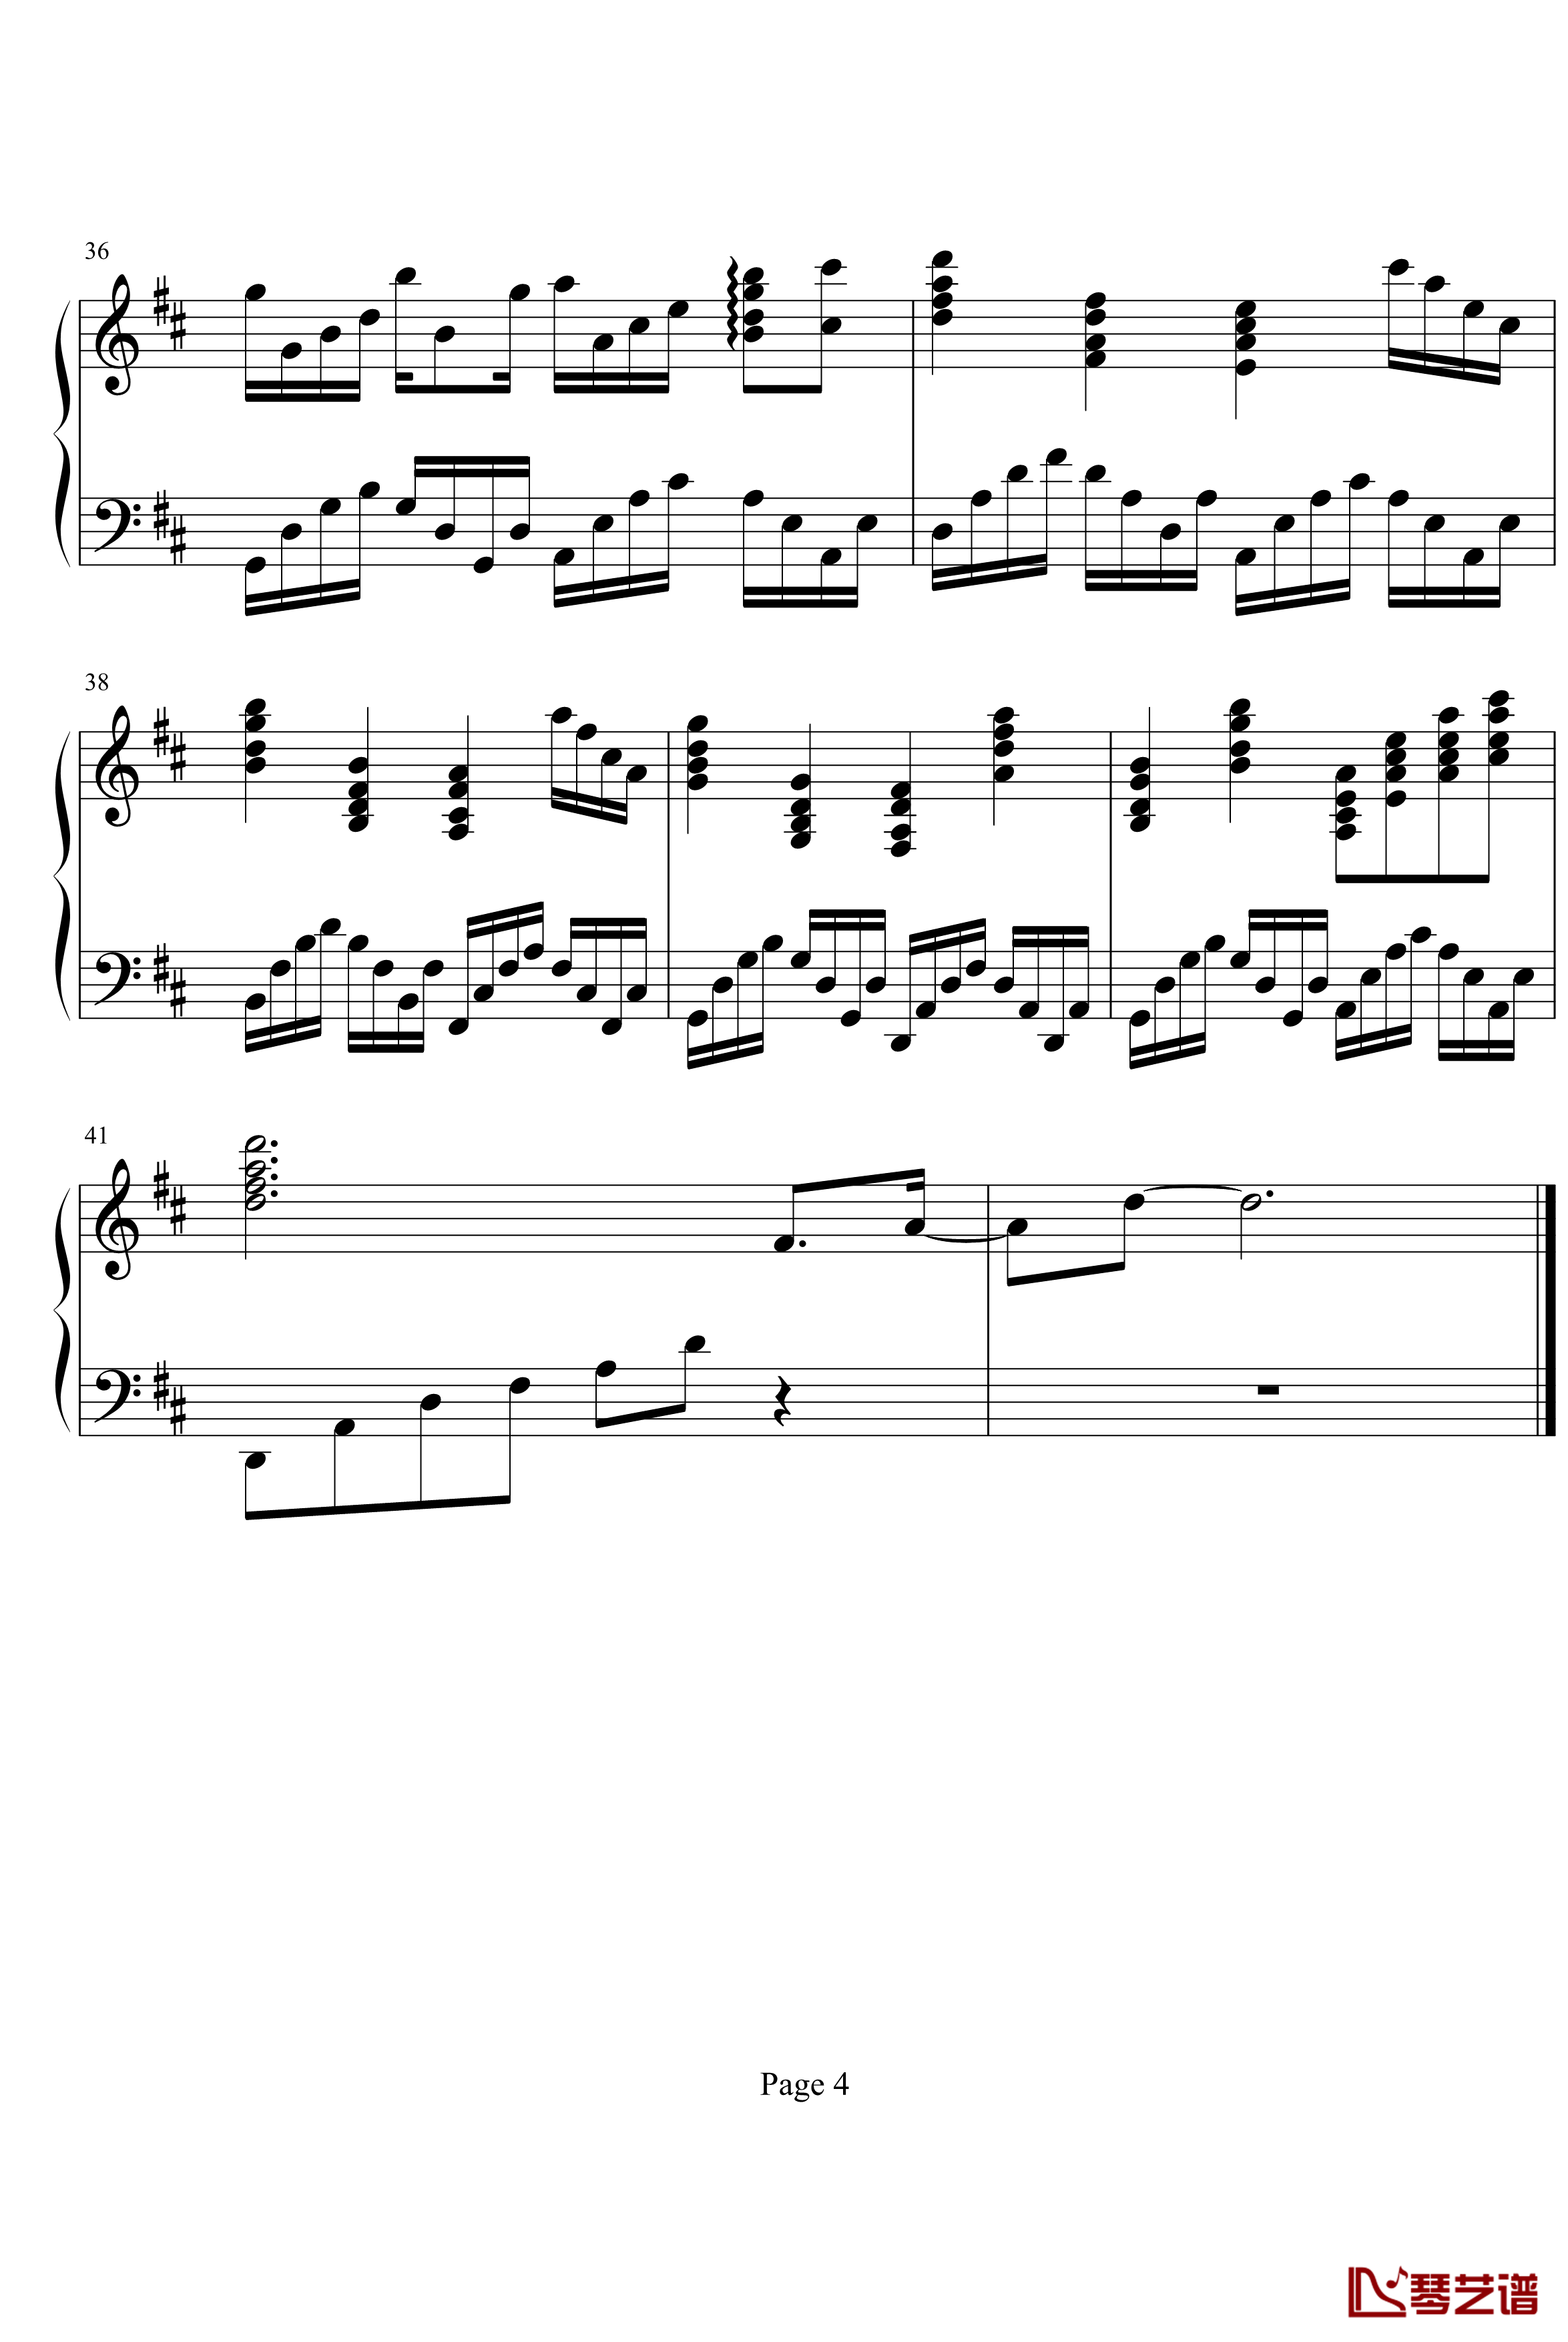 卡农钢琴谱-canon-帕赫贝尔-Pachelbel4